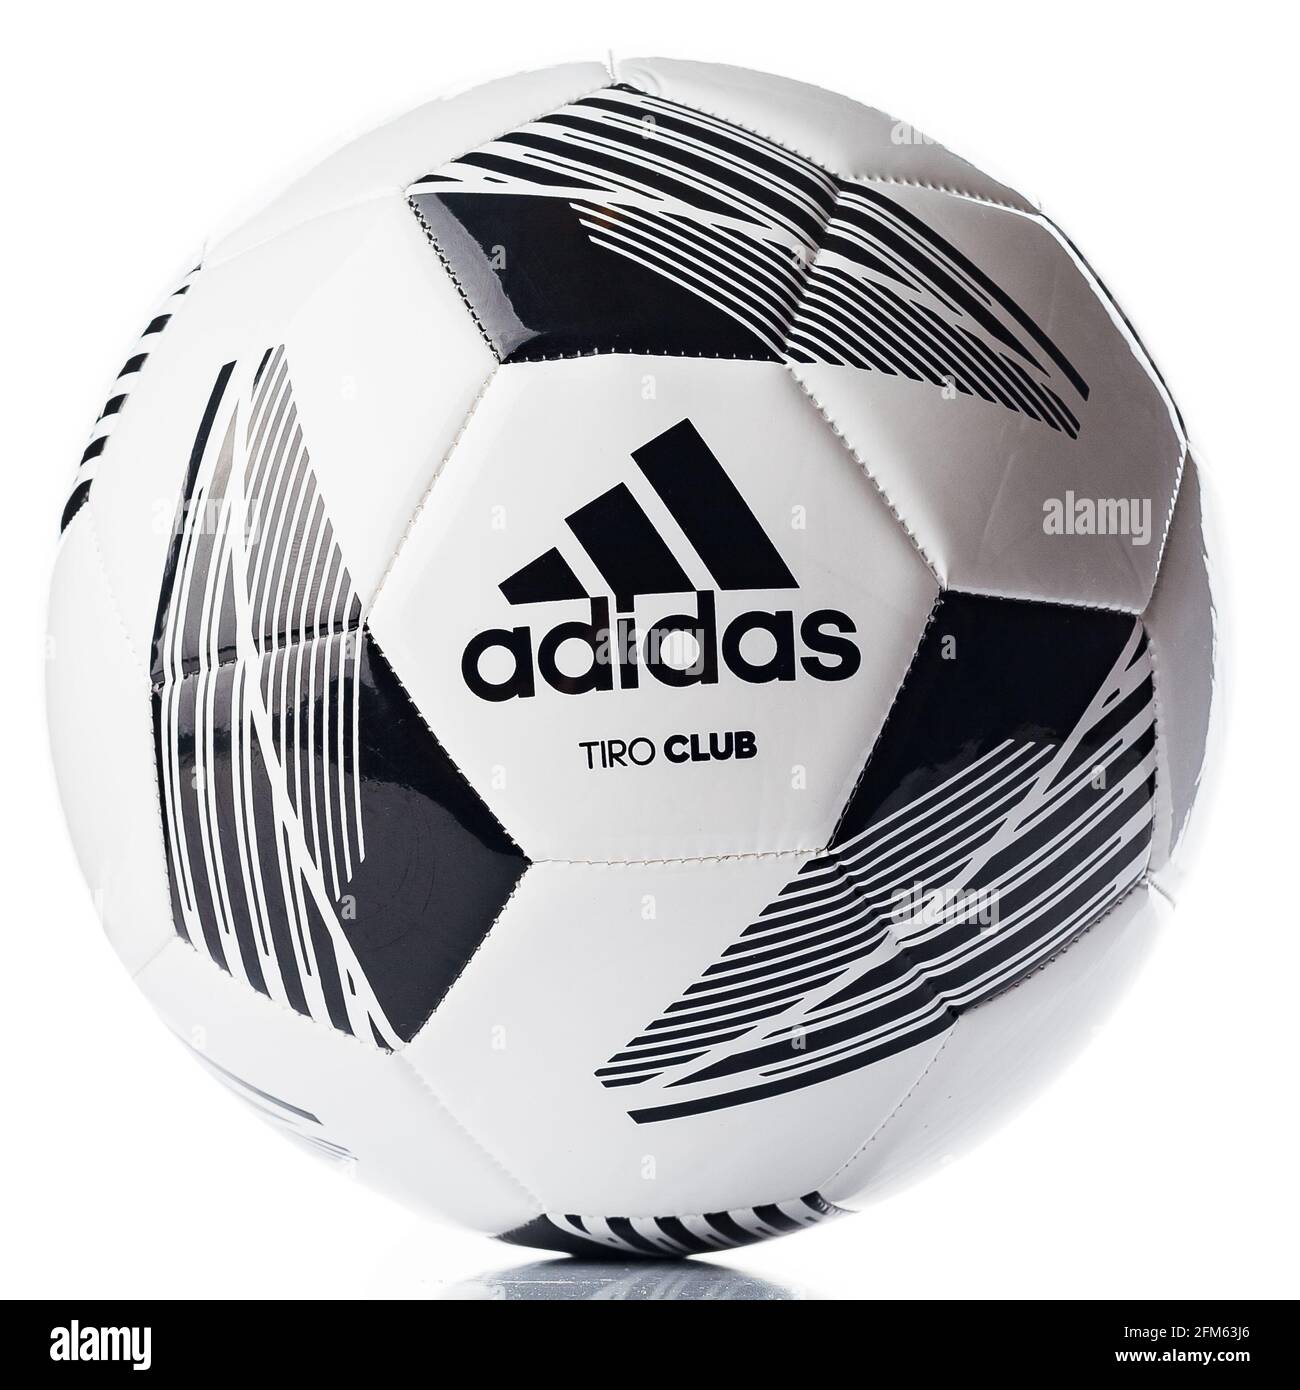 Fußball, Fußball Adidas Tiro Club auf weißem Hintergrund. Logo der Marke  adidas Stockfotografie - Alamy